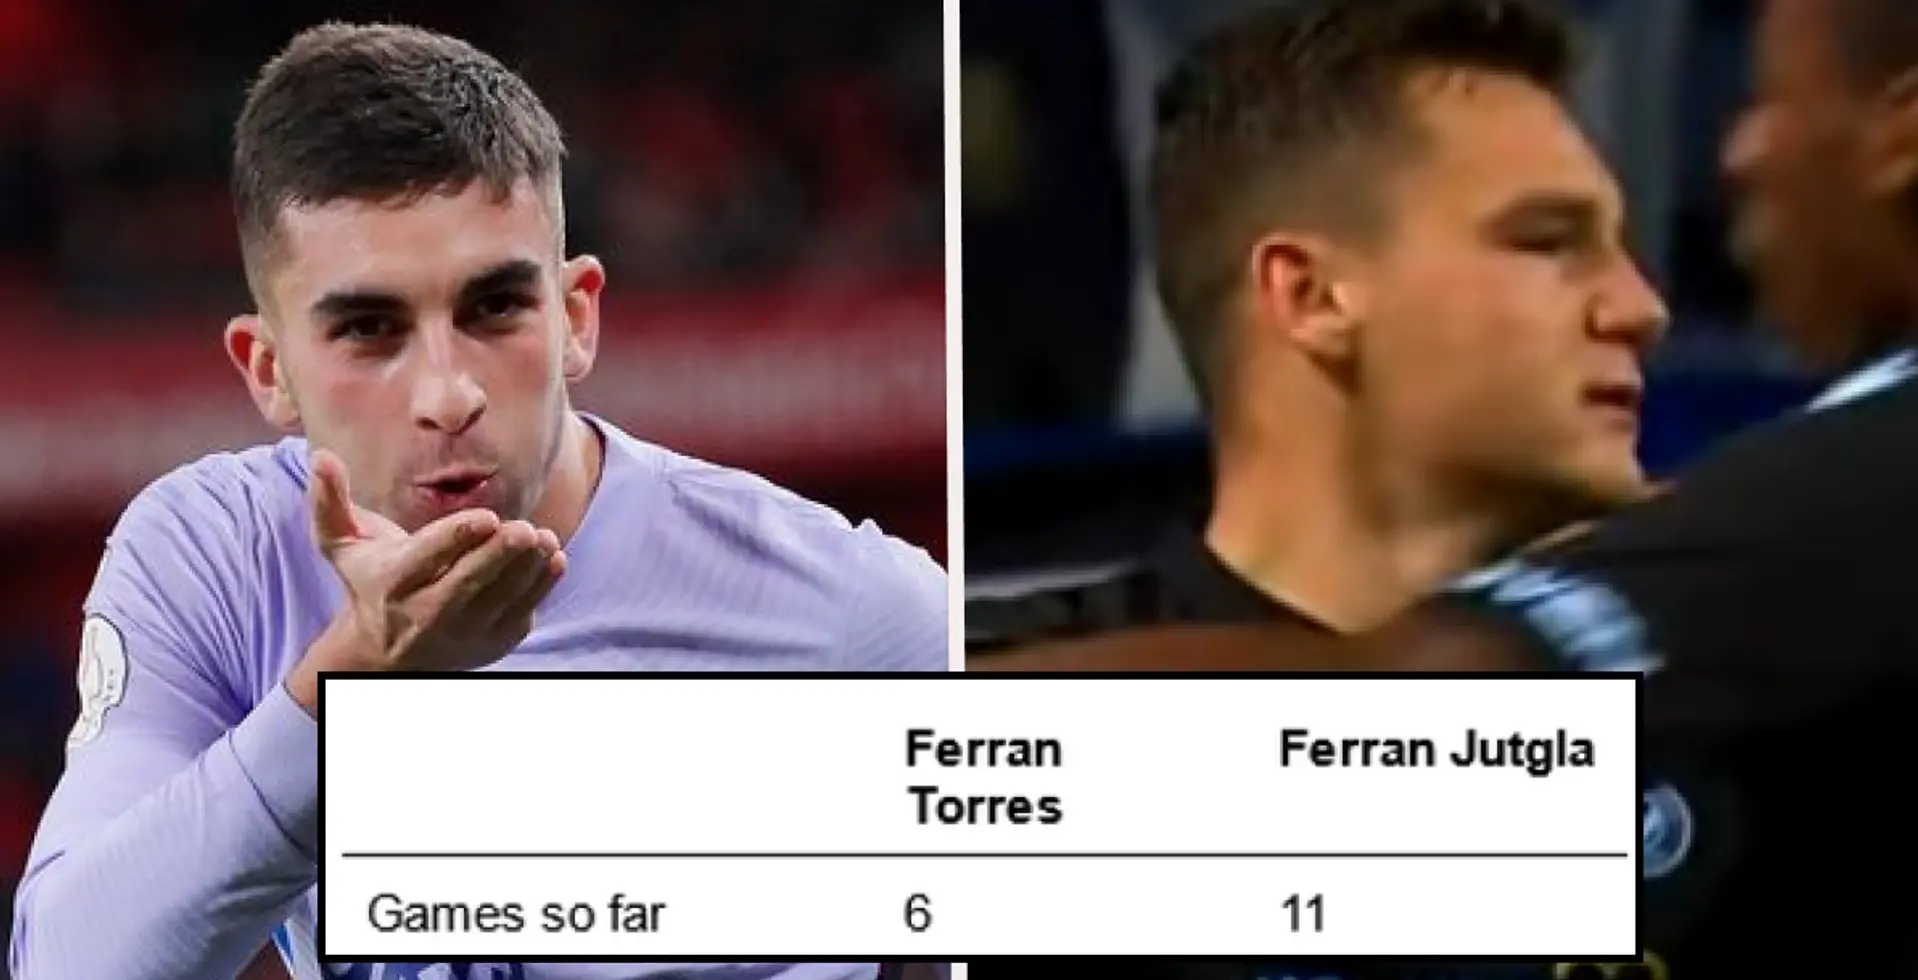 La comparaison des deux Ferran montre que le Barça a peut-être fait une erreur en laissant partir l'un